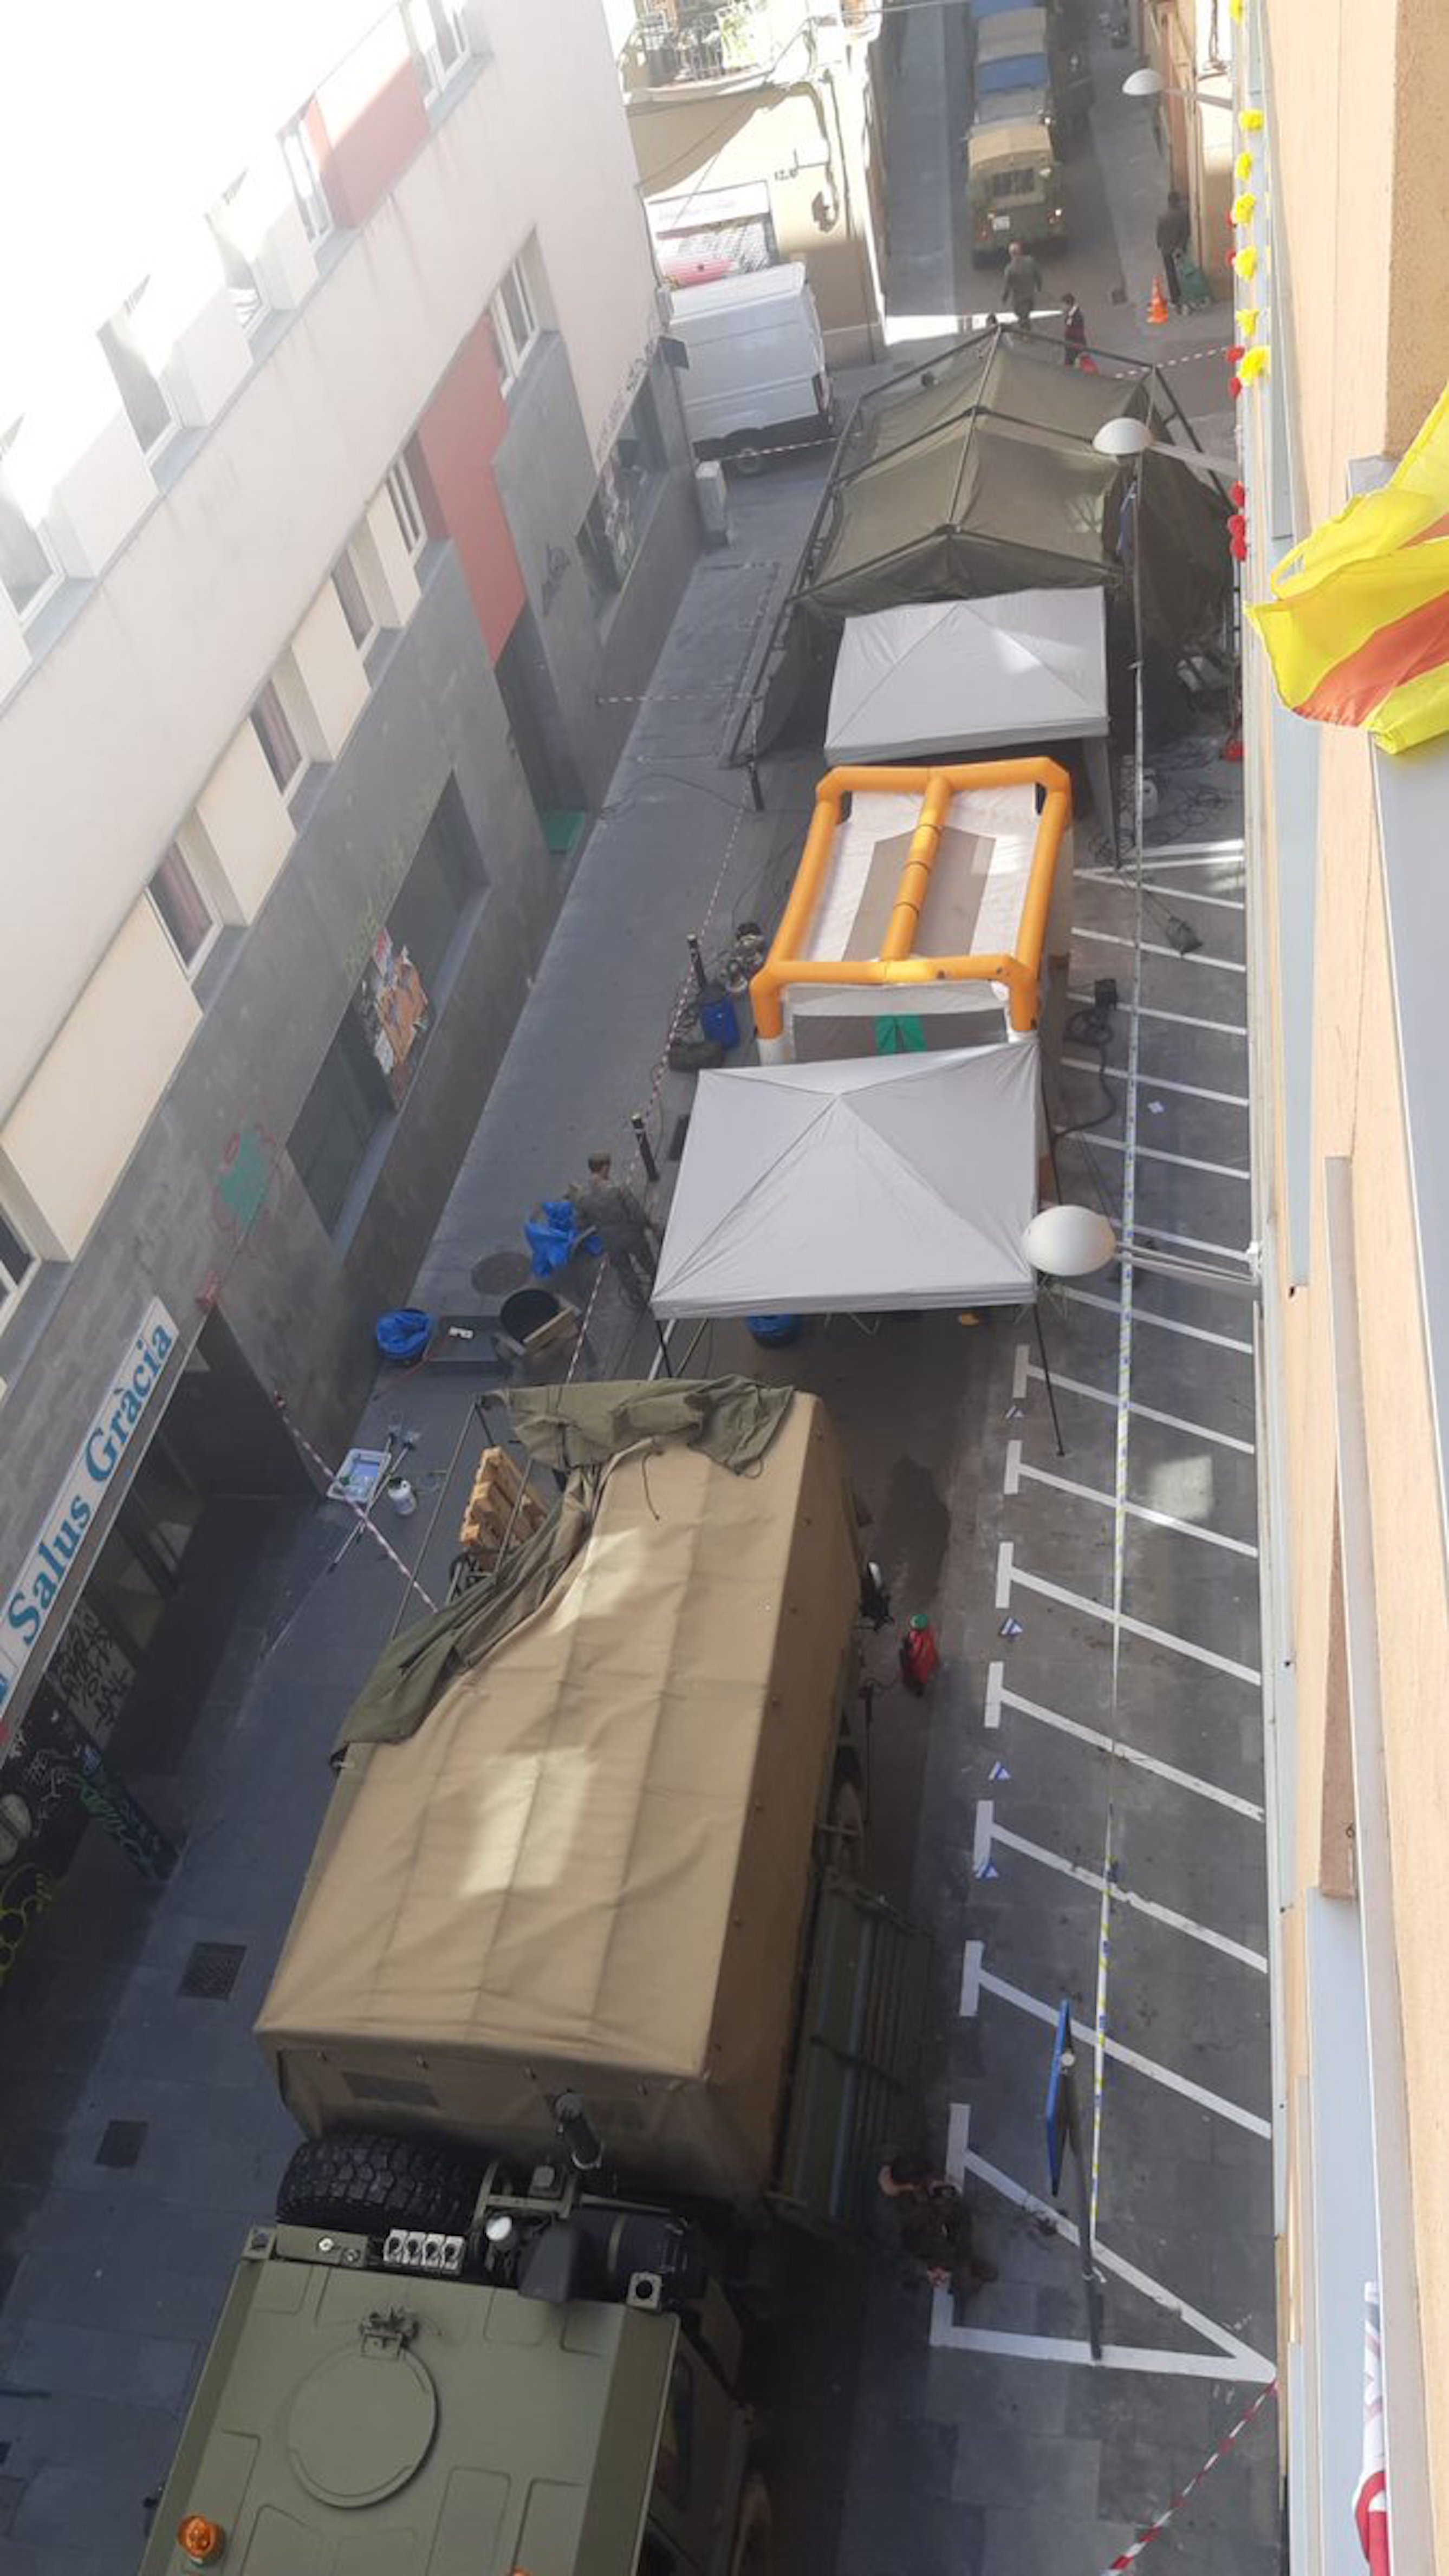 El ejército español despliega tiendas en medio de Gràcia